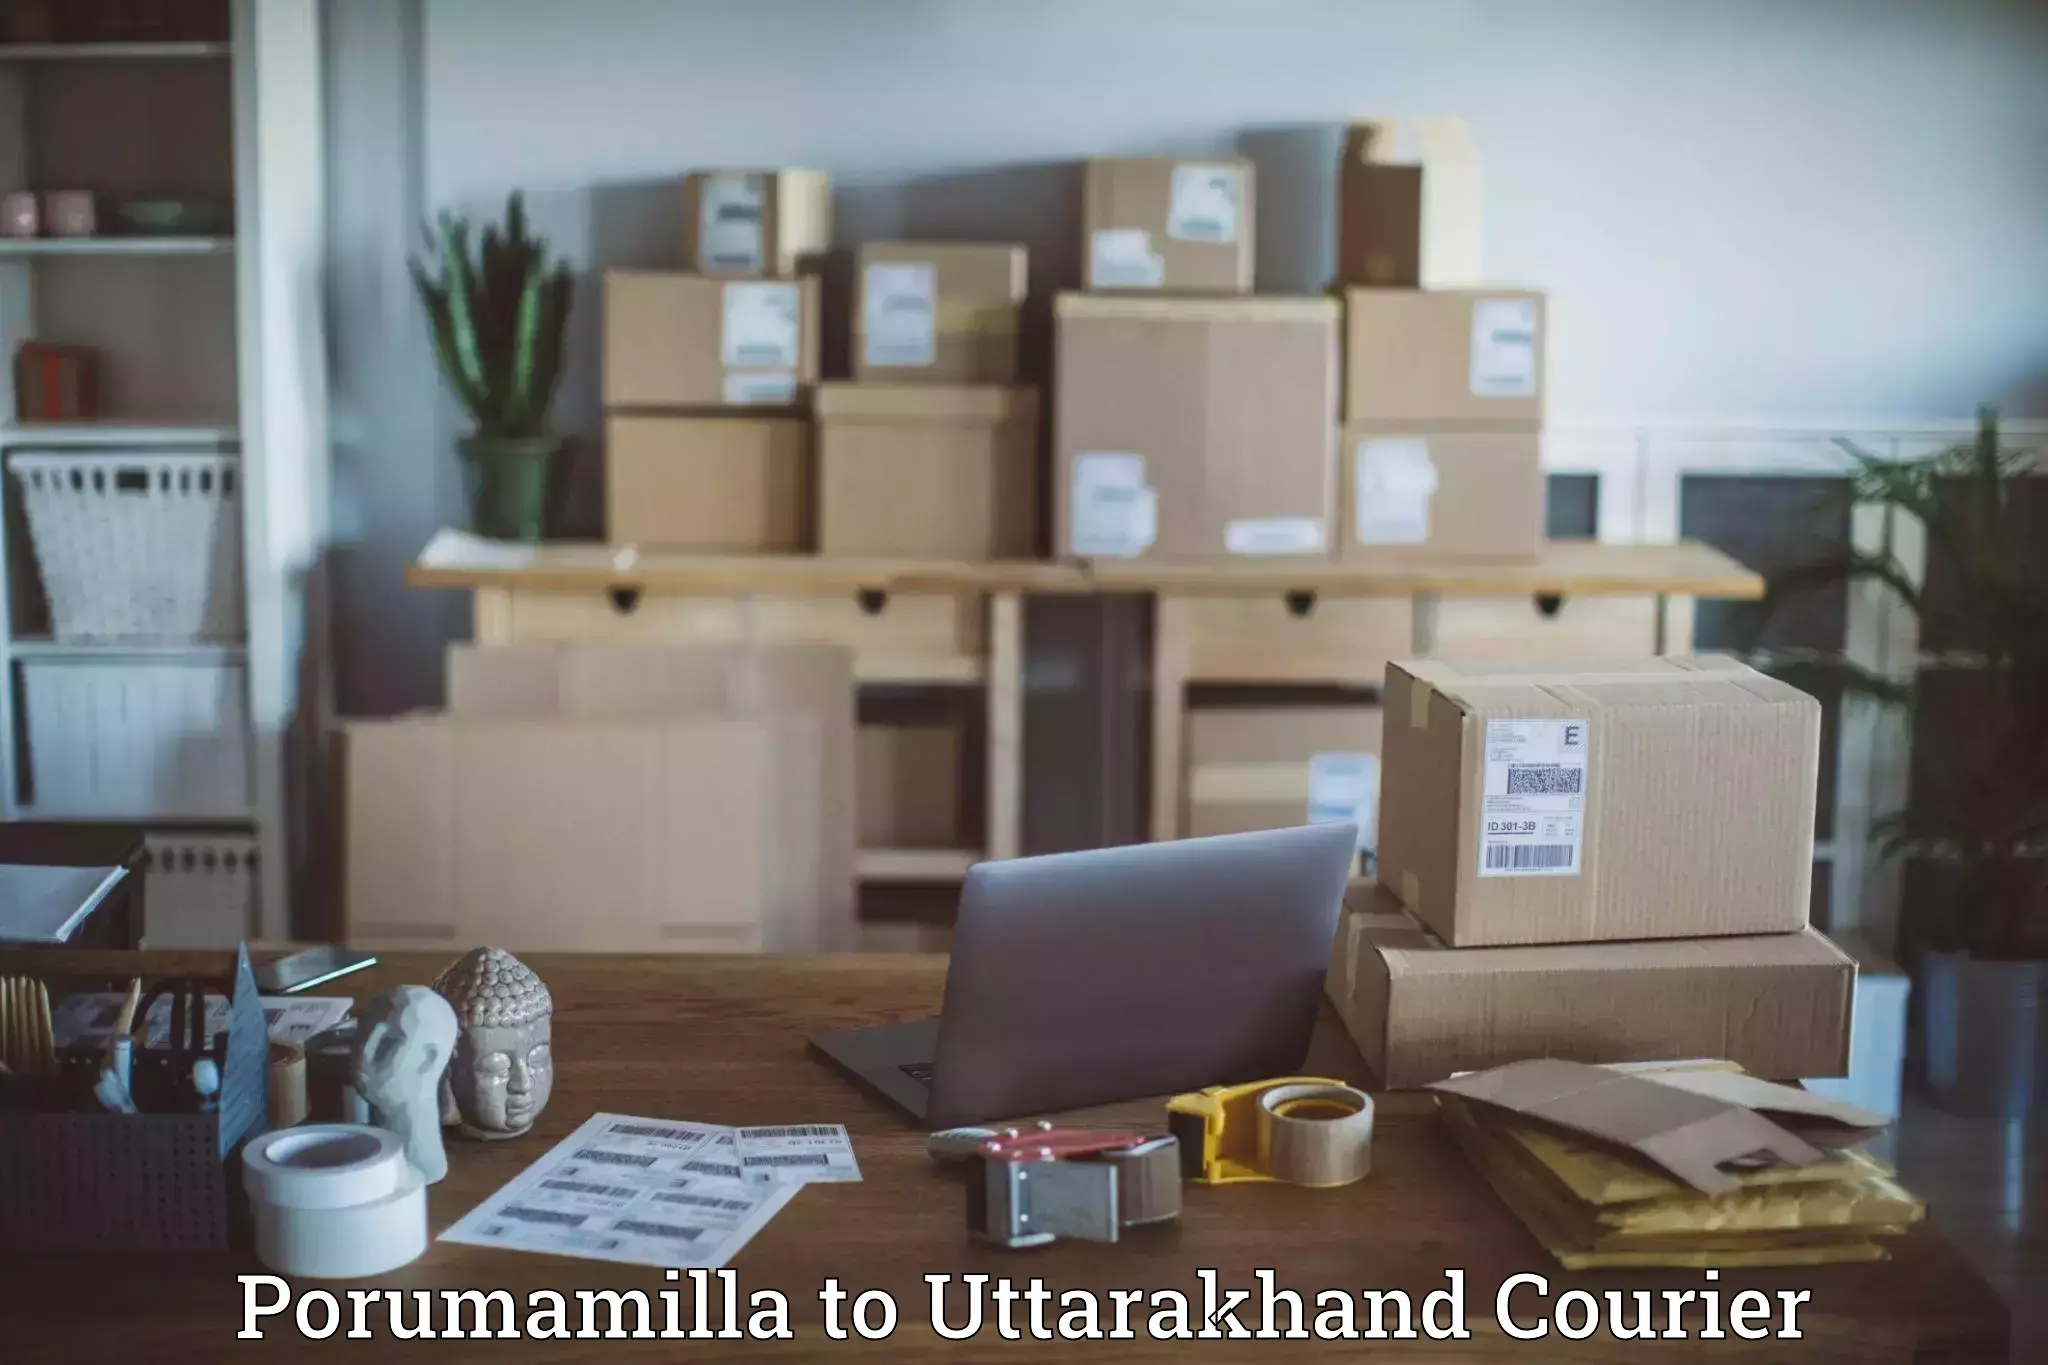 Flexible delivery schedules Porumamilla to IIT Roorkee